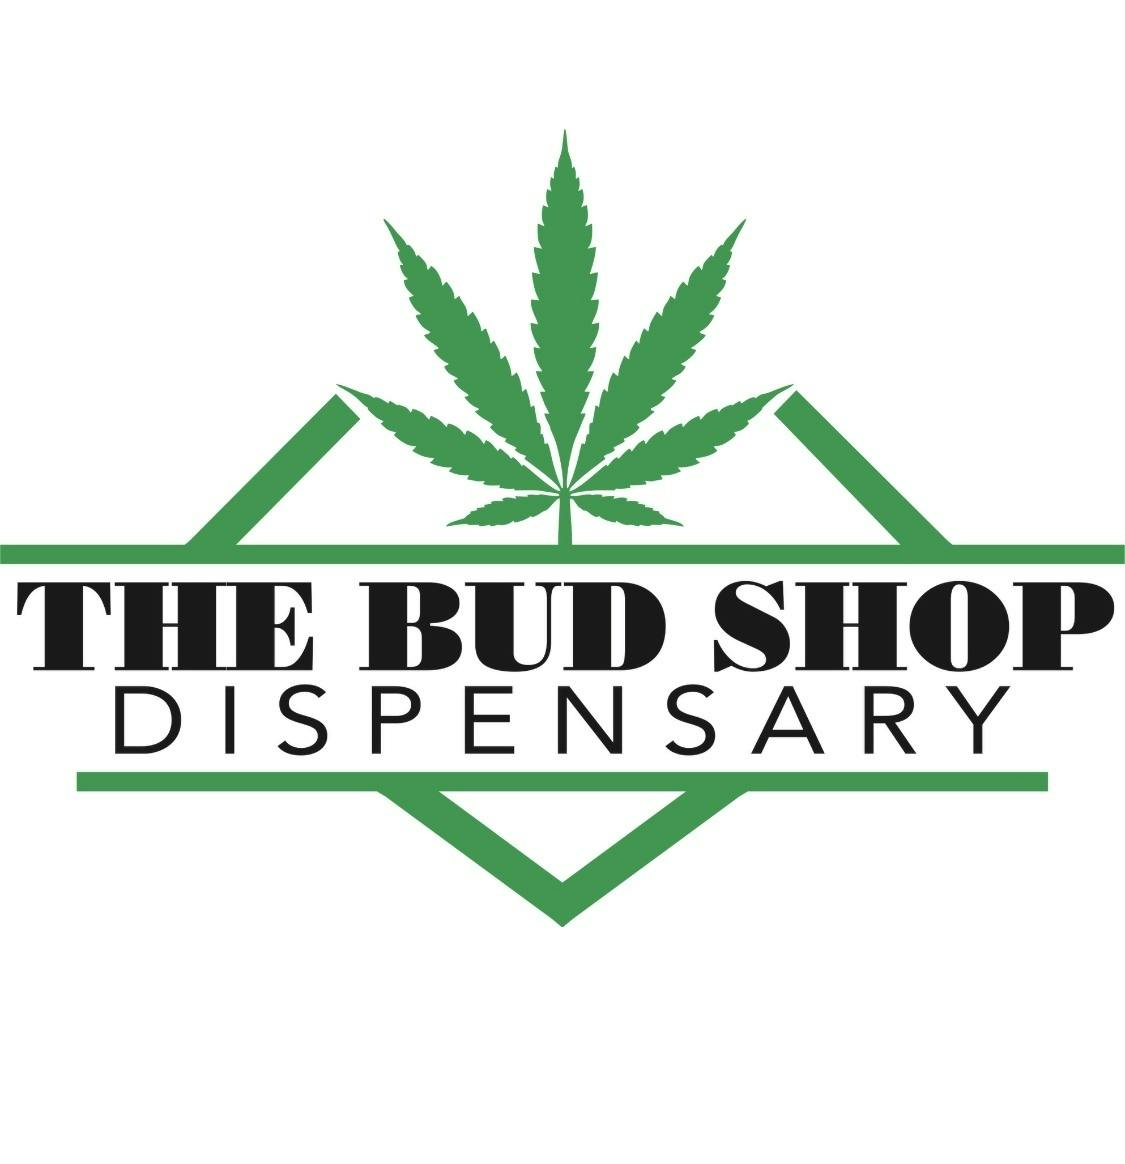 The Bud Shop Dispensary logo